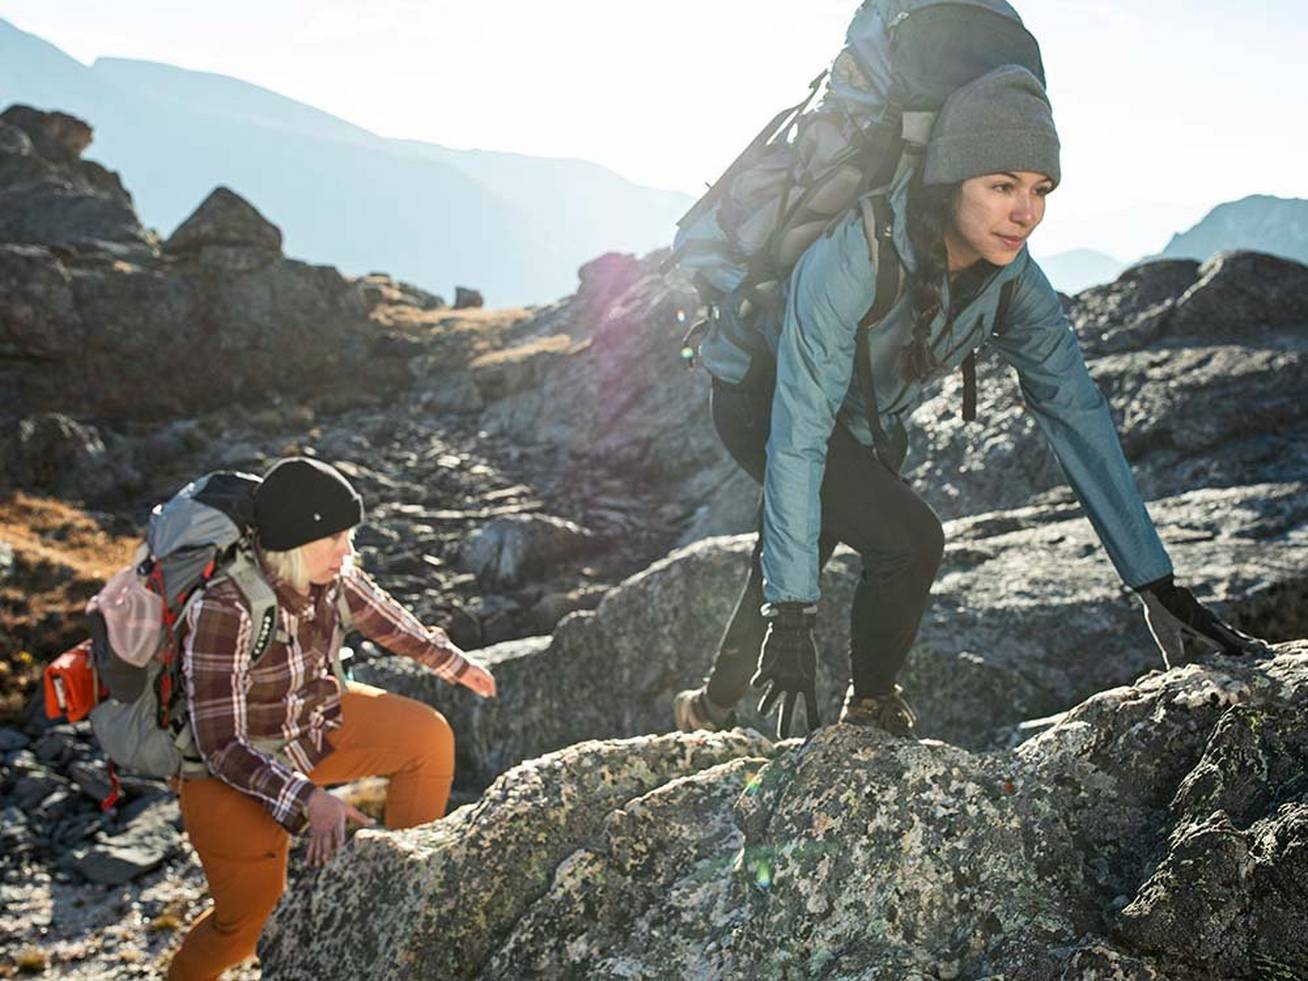 Women climbing rocks with hiking gear